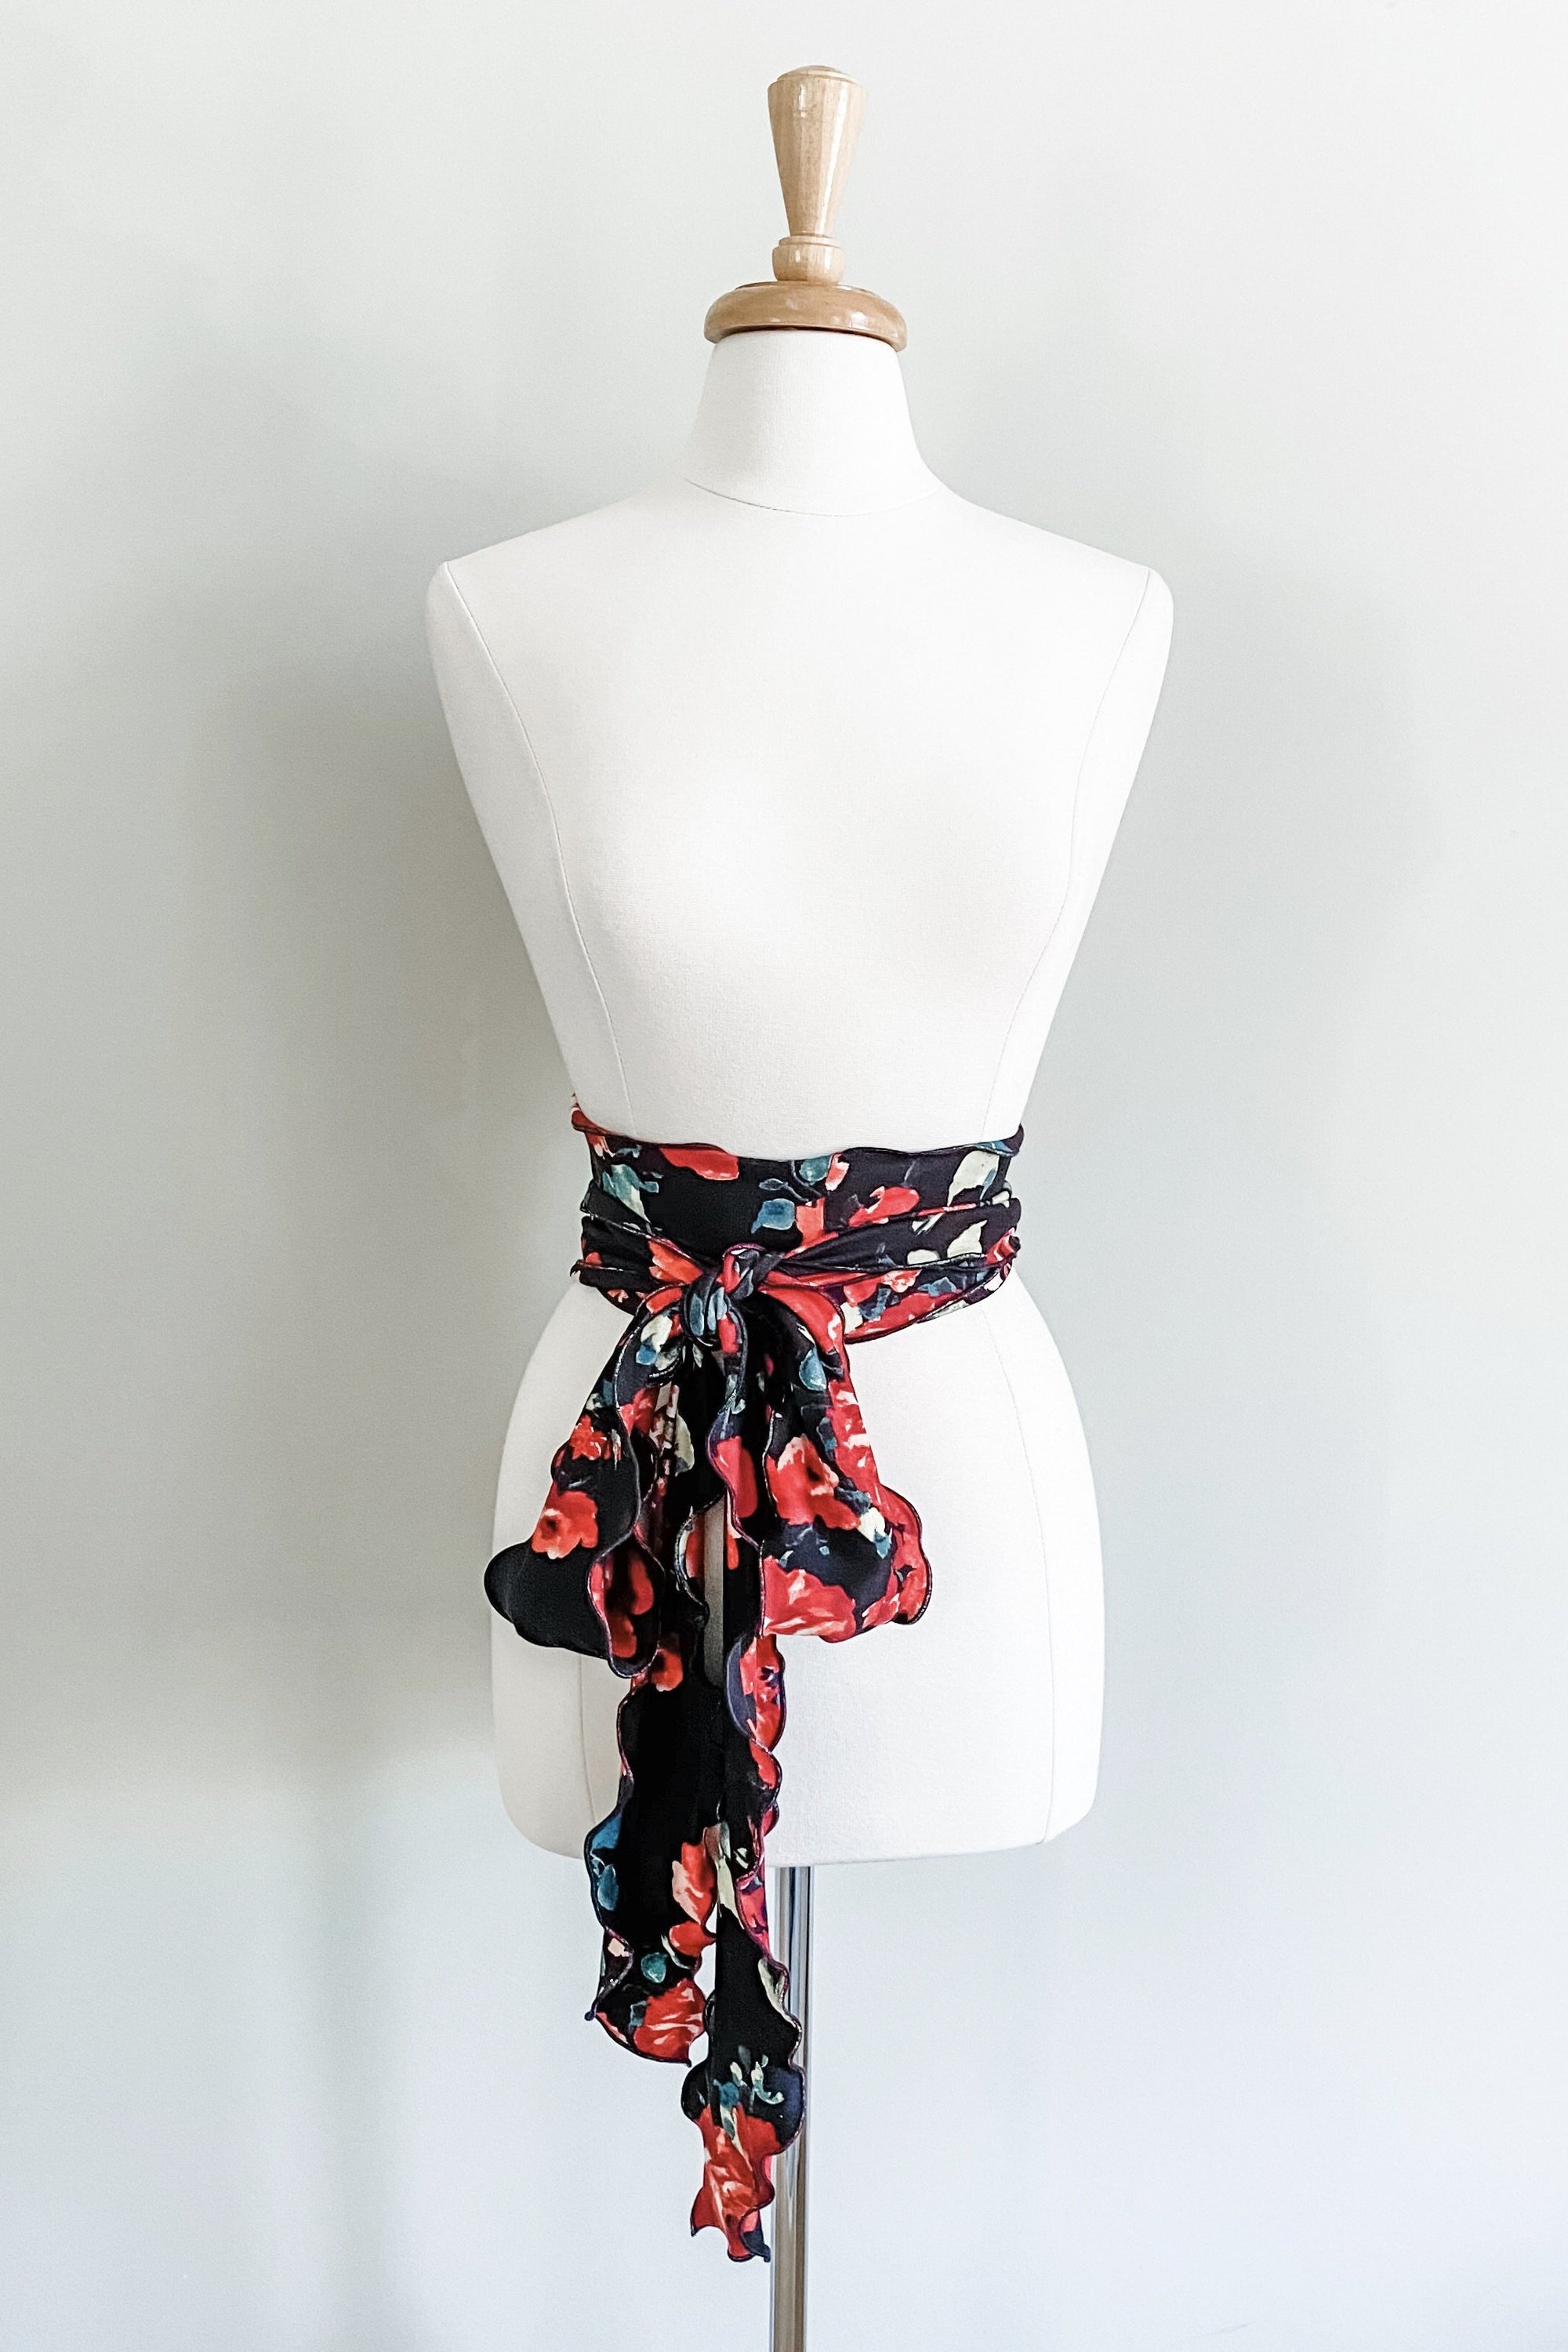 Diane Kroe - Scalloped Versatile Sash in Brushed Prints (Red Black Floral)